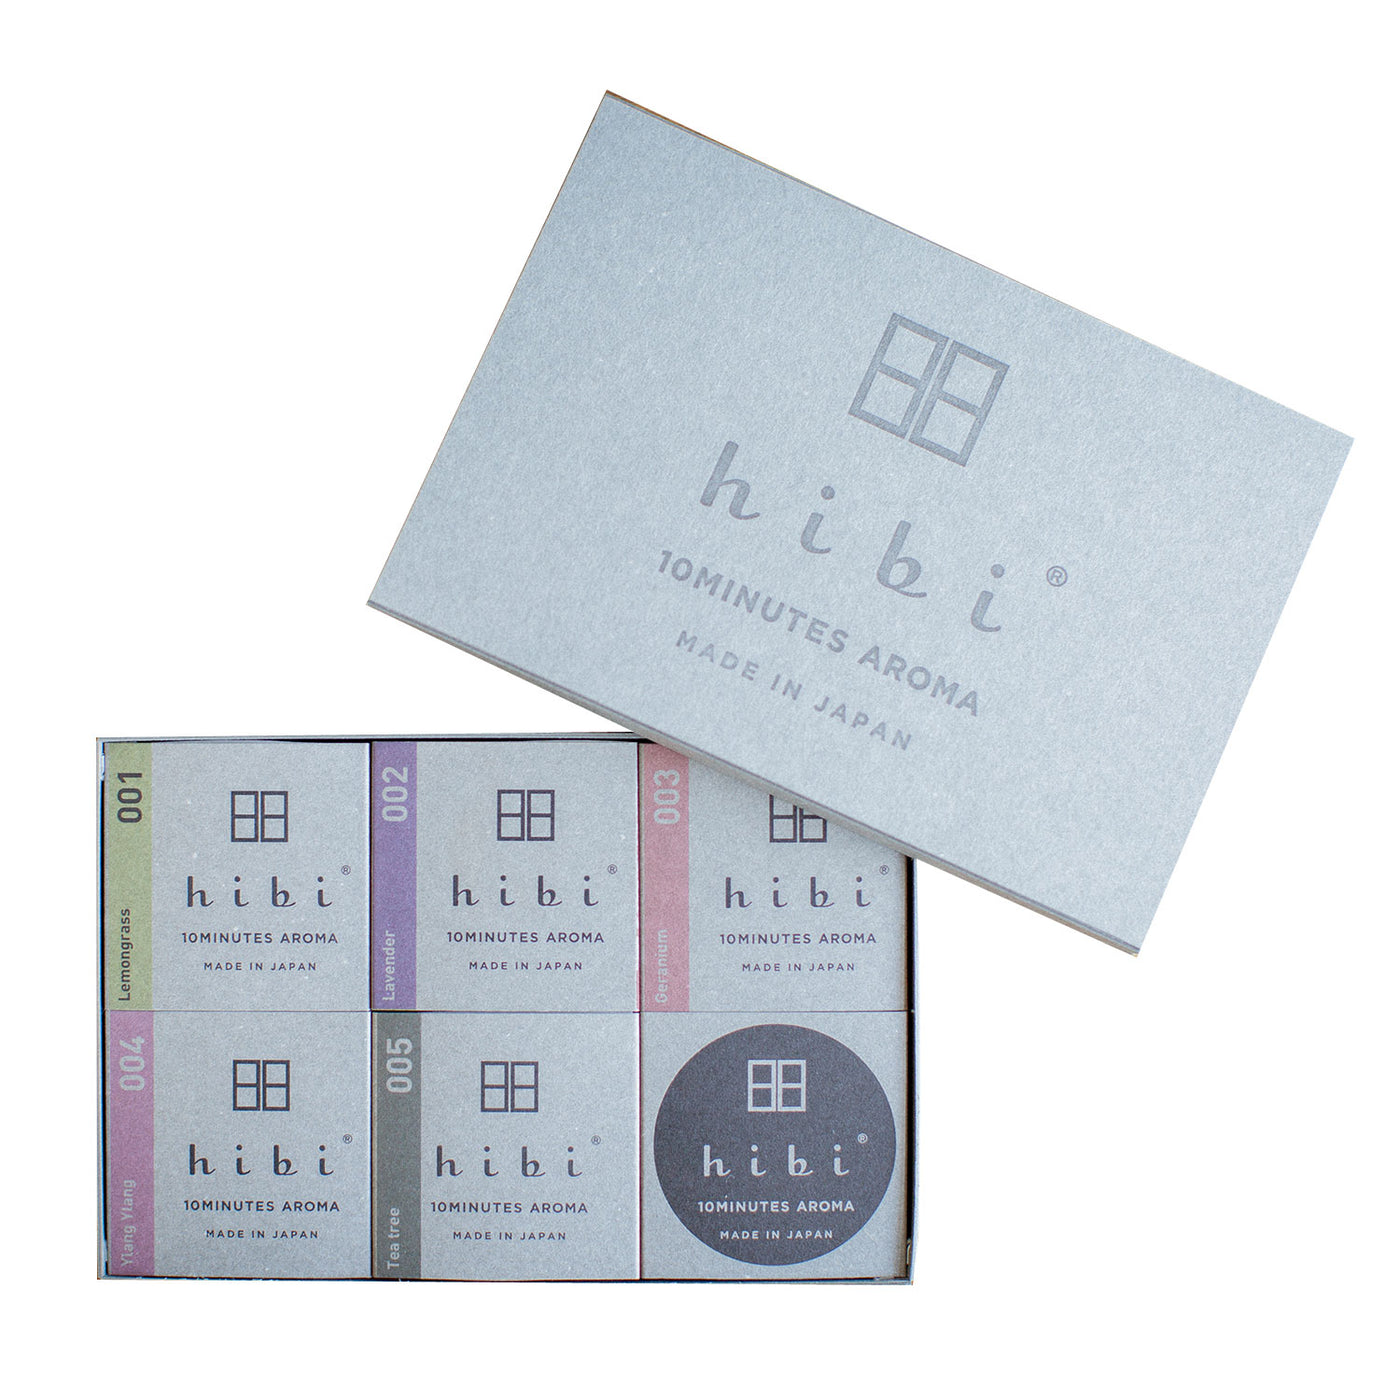 Hibi Incense Matches 5-Box Gift Set by Hibi Match